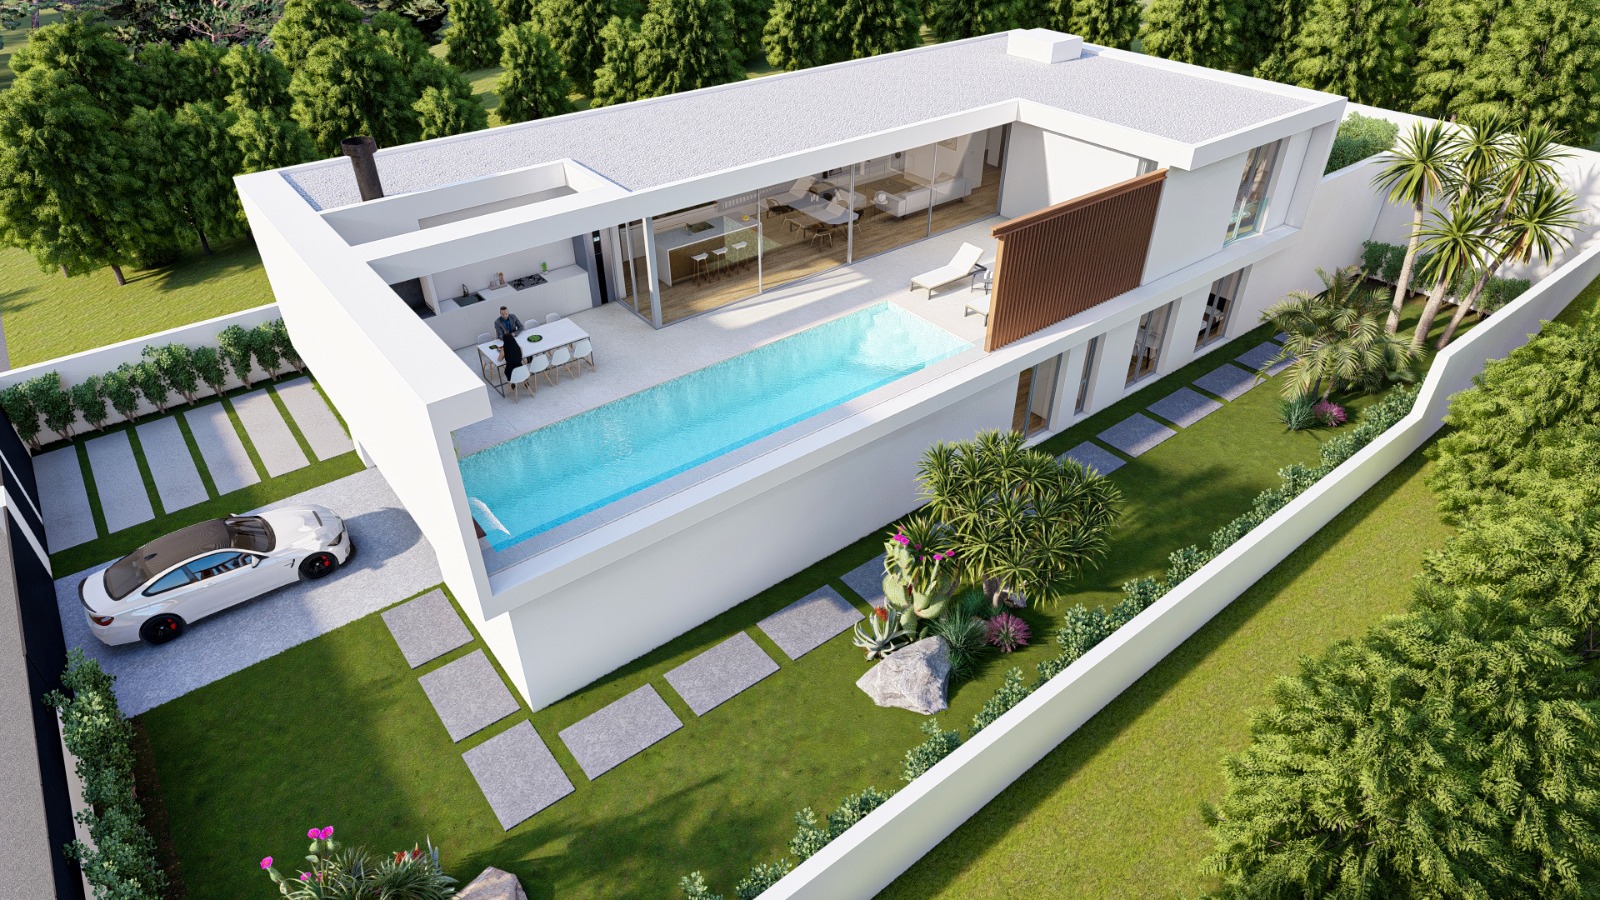 Nieuwbouw villa met 4 slaapkamers te koop in Calpe, Pla Roig. Privé zwembad, modern design, rustige omgeving.
